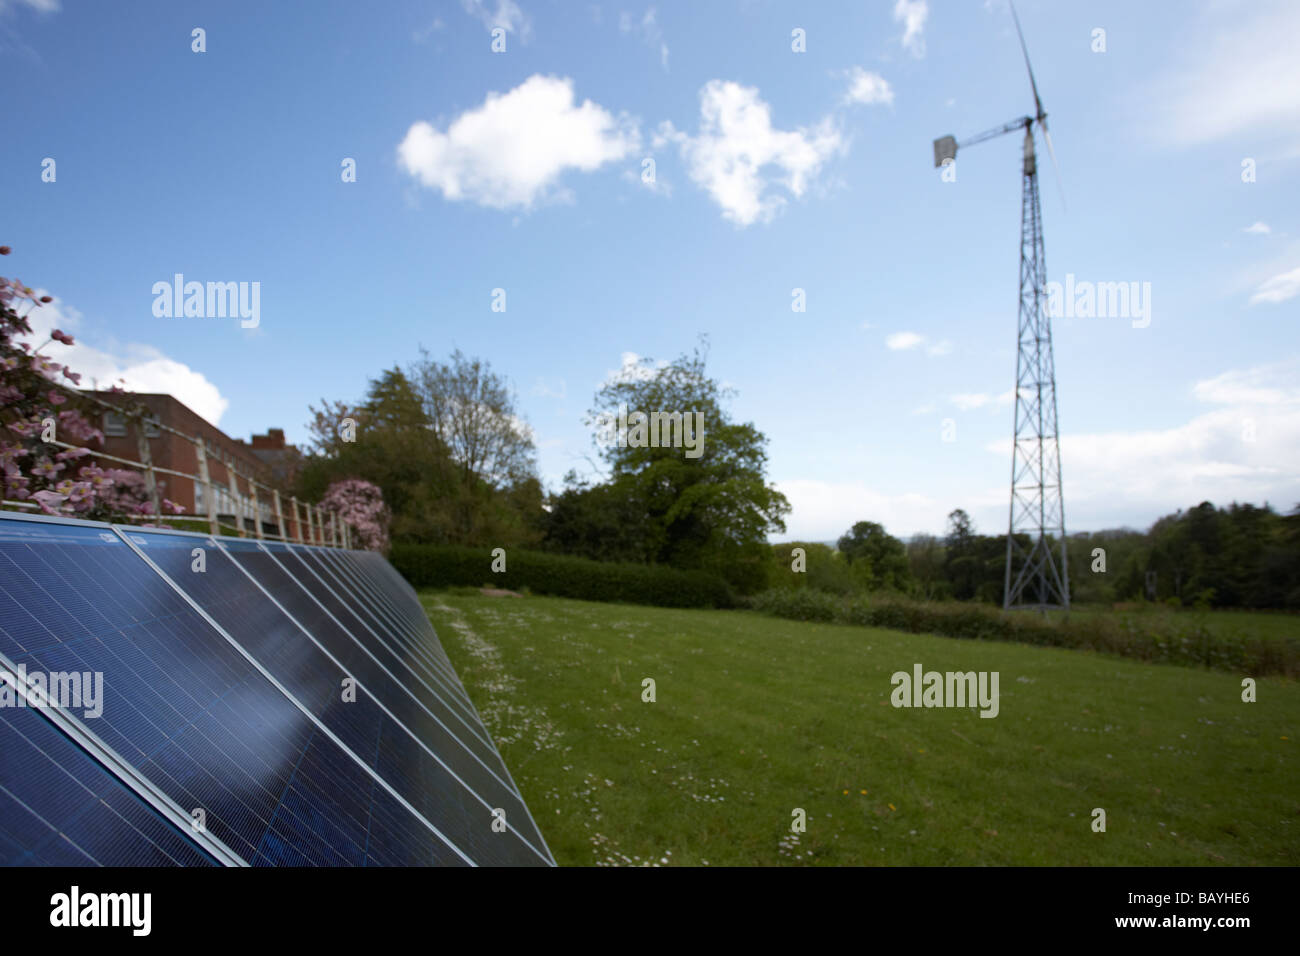 Sonne nach unten auf ein Array von blau getönten polykristallinen Silizium Photovoltaik-Solarzellen und Medium sized Windkraftanlage Stockfoto